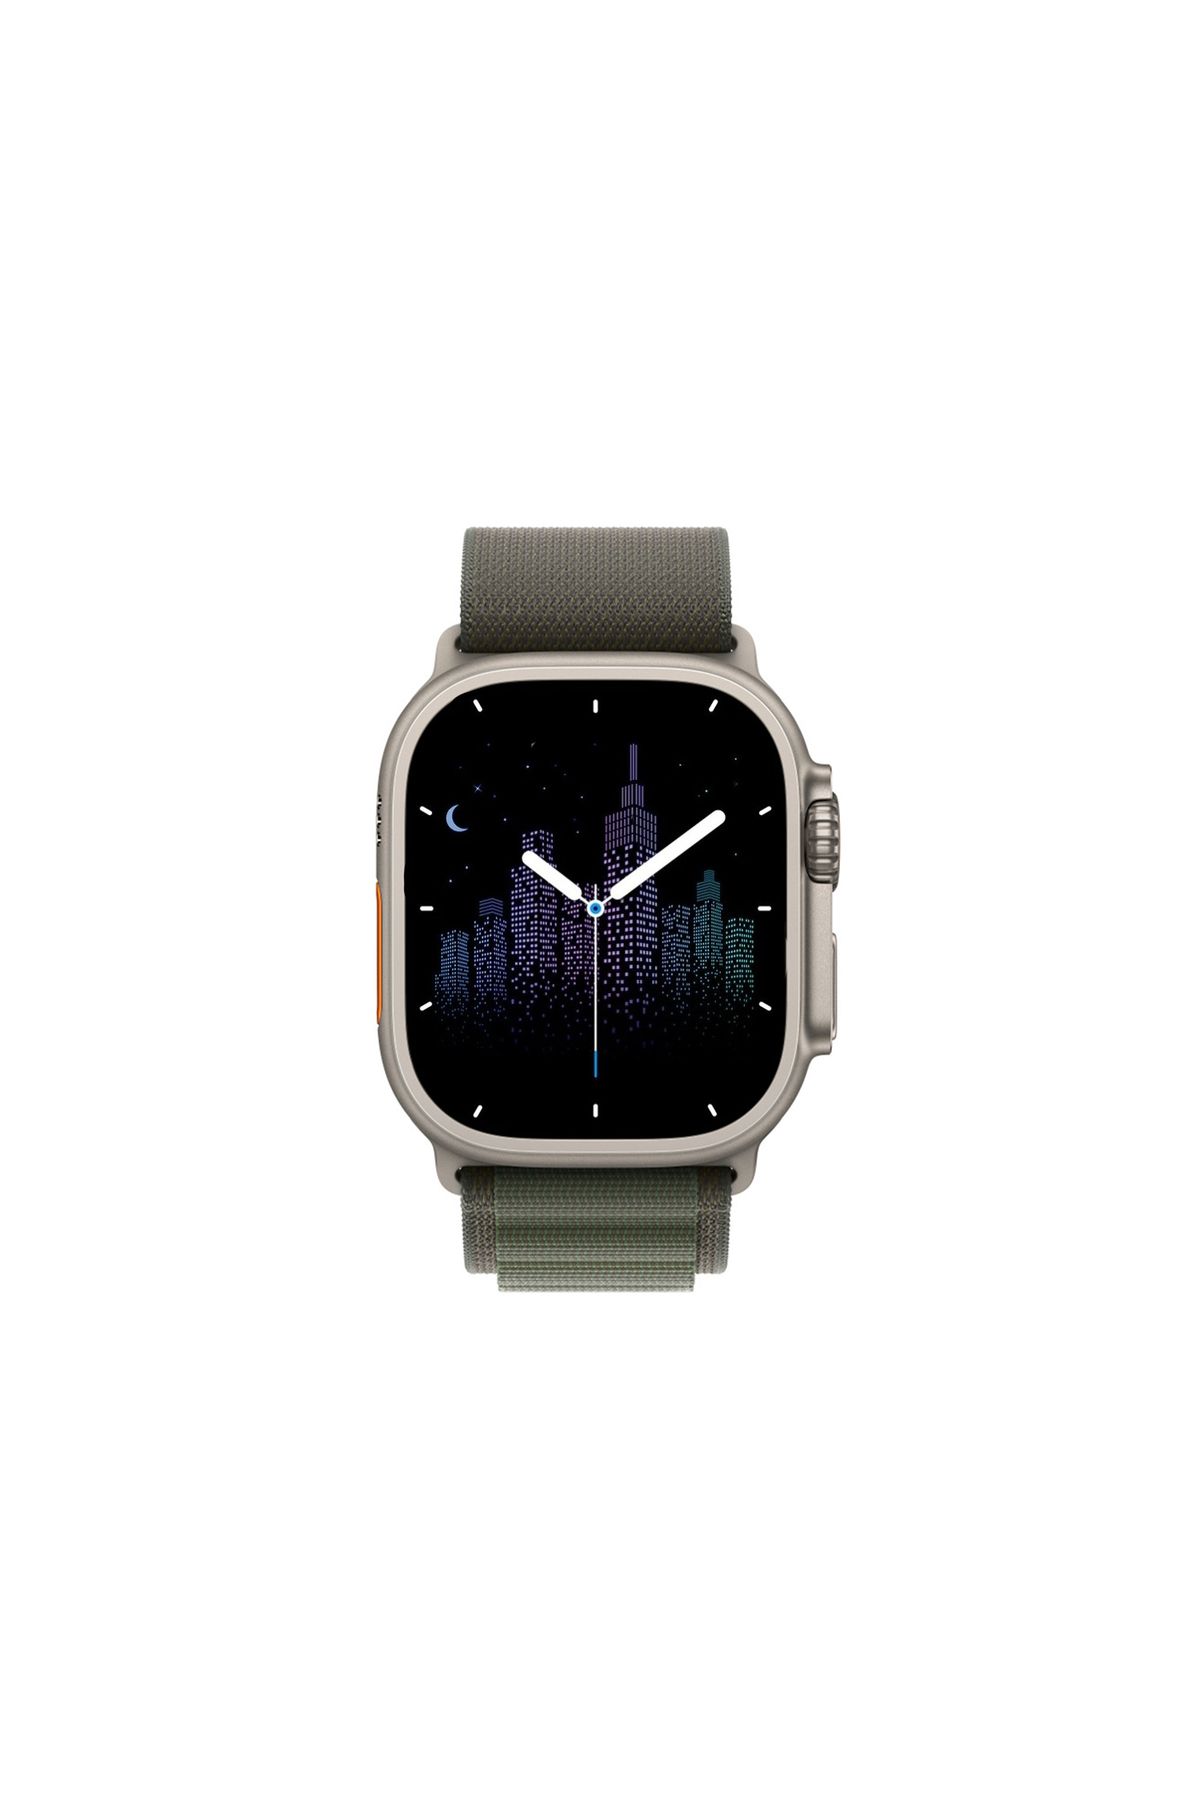 Winex Mobile Winex 2024 Watch 8 Pro Max Amoled Ekran Android Ios Uyumlu Akıllı Saat Yeşil